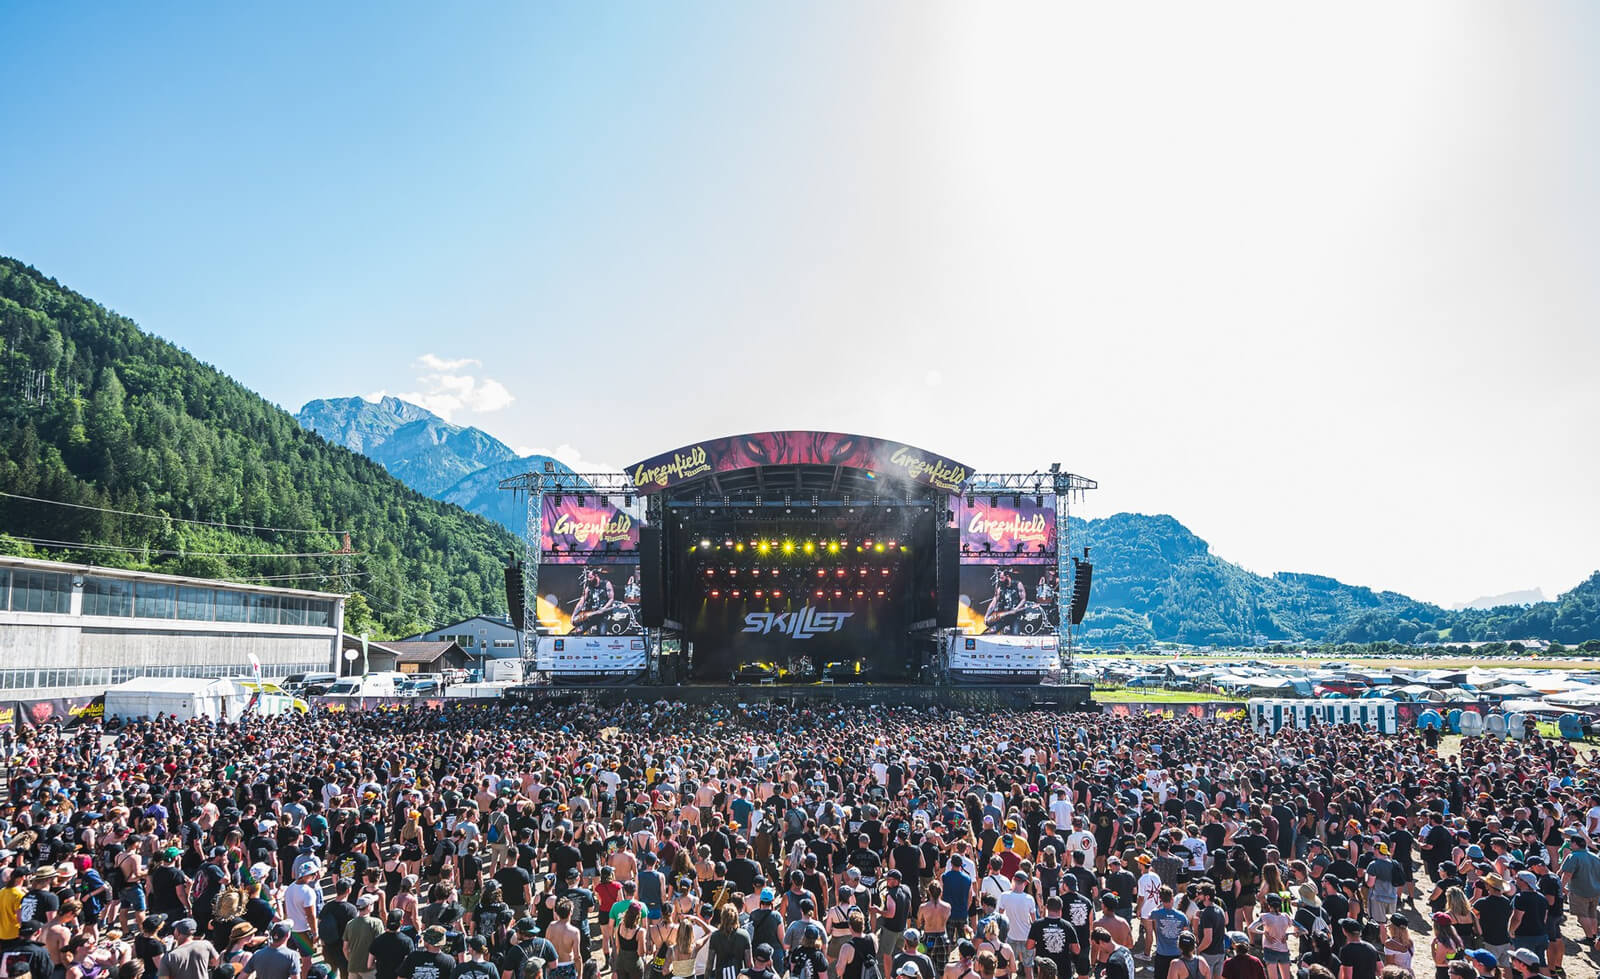 Greenfield Interlaken Music Festivals in Switzerland